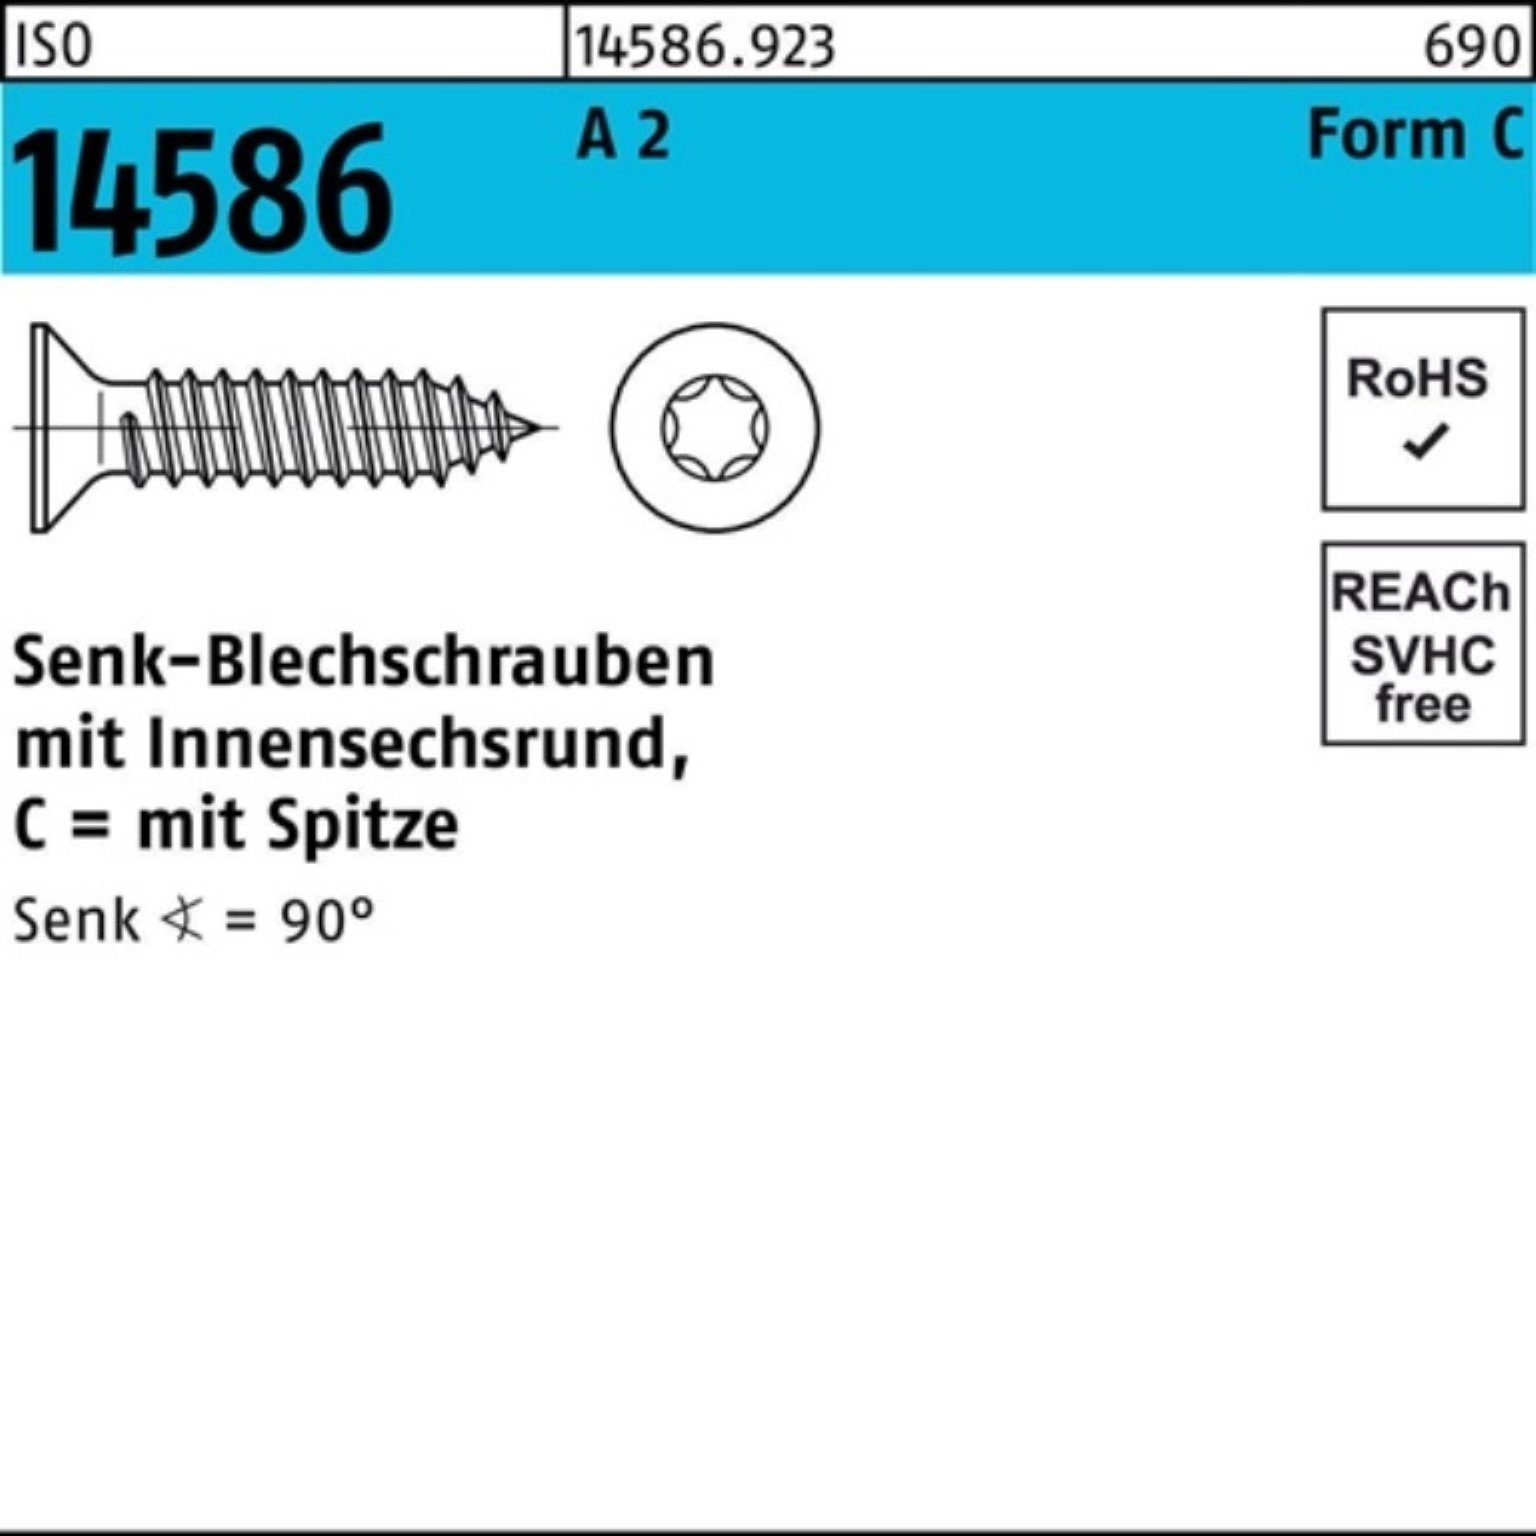 32 Schraube 2 T15 ISO 14586 3,5x Pack 1000er A ISR/Spitze Senkblechschraube -C Reyher